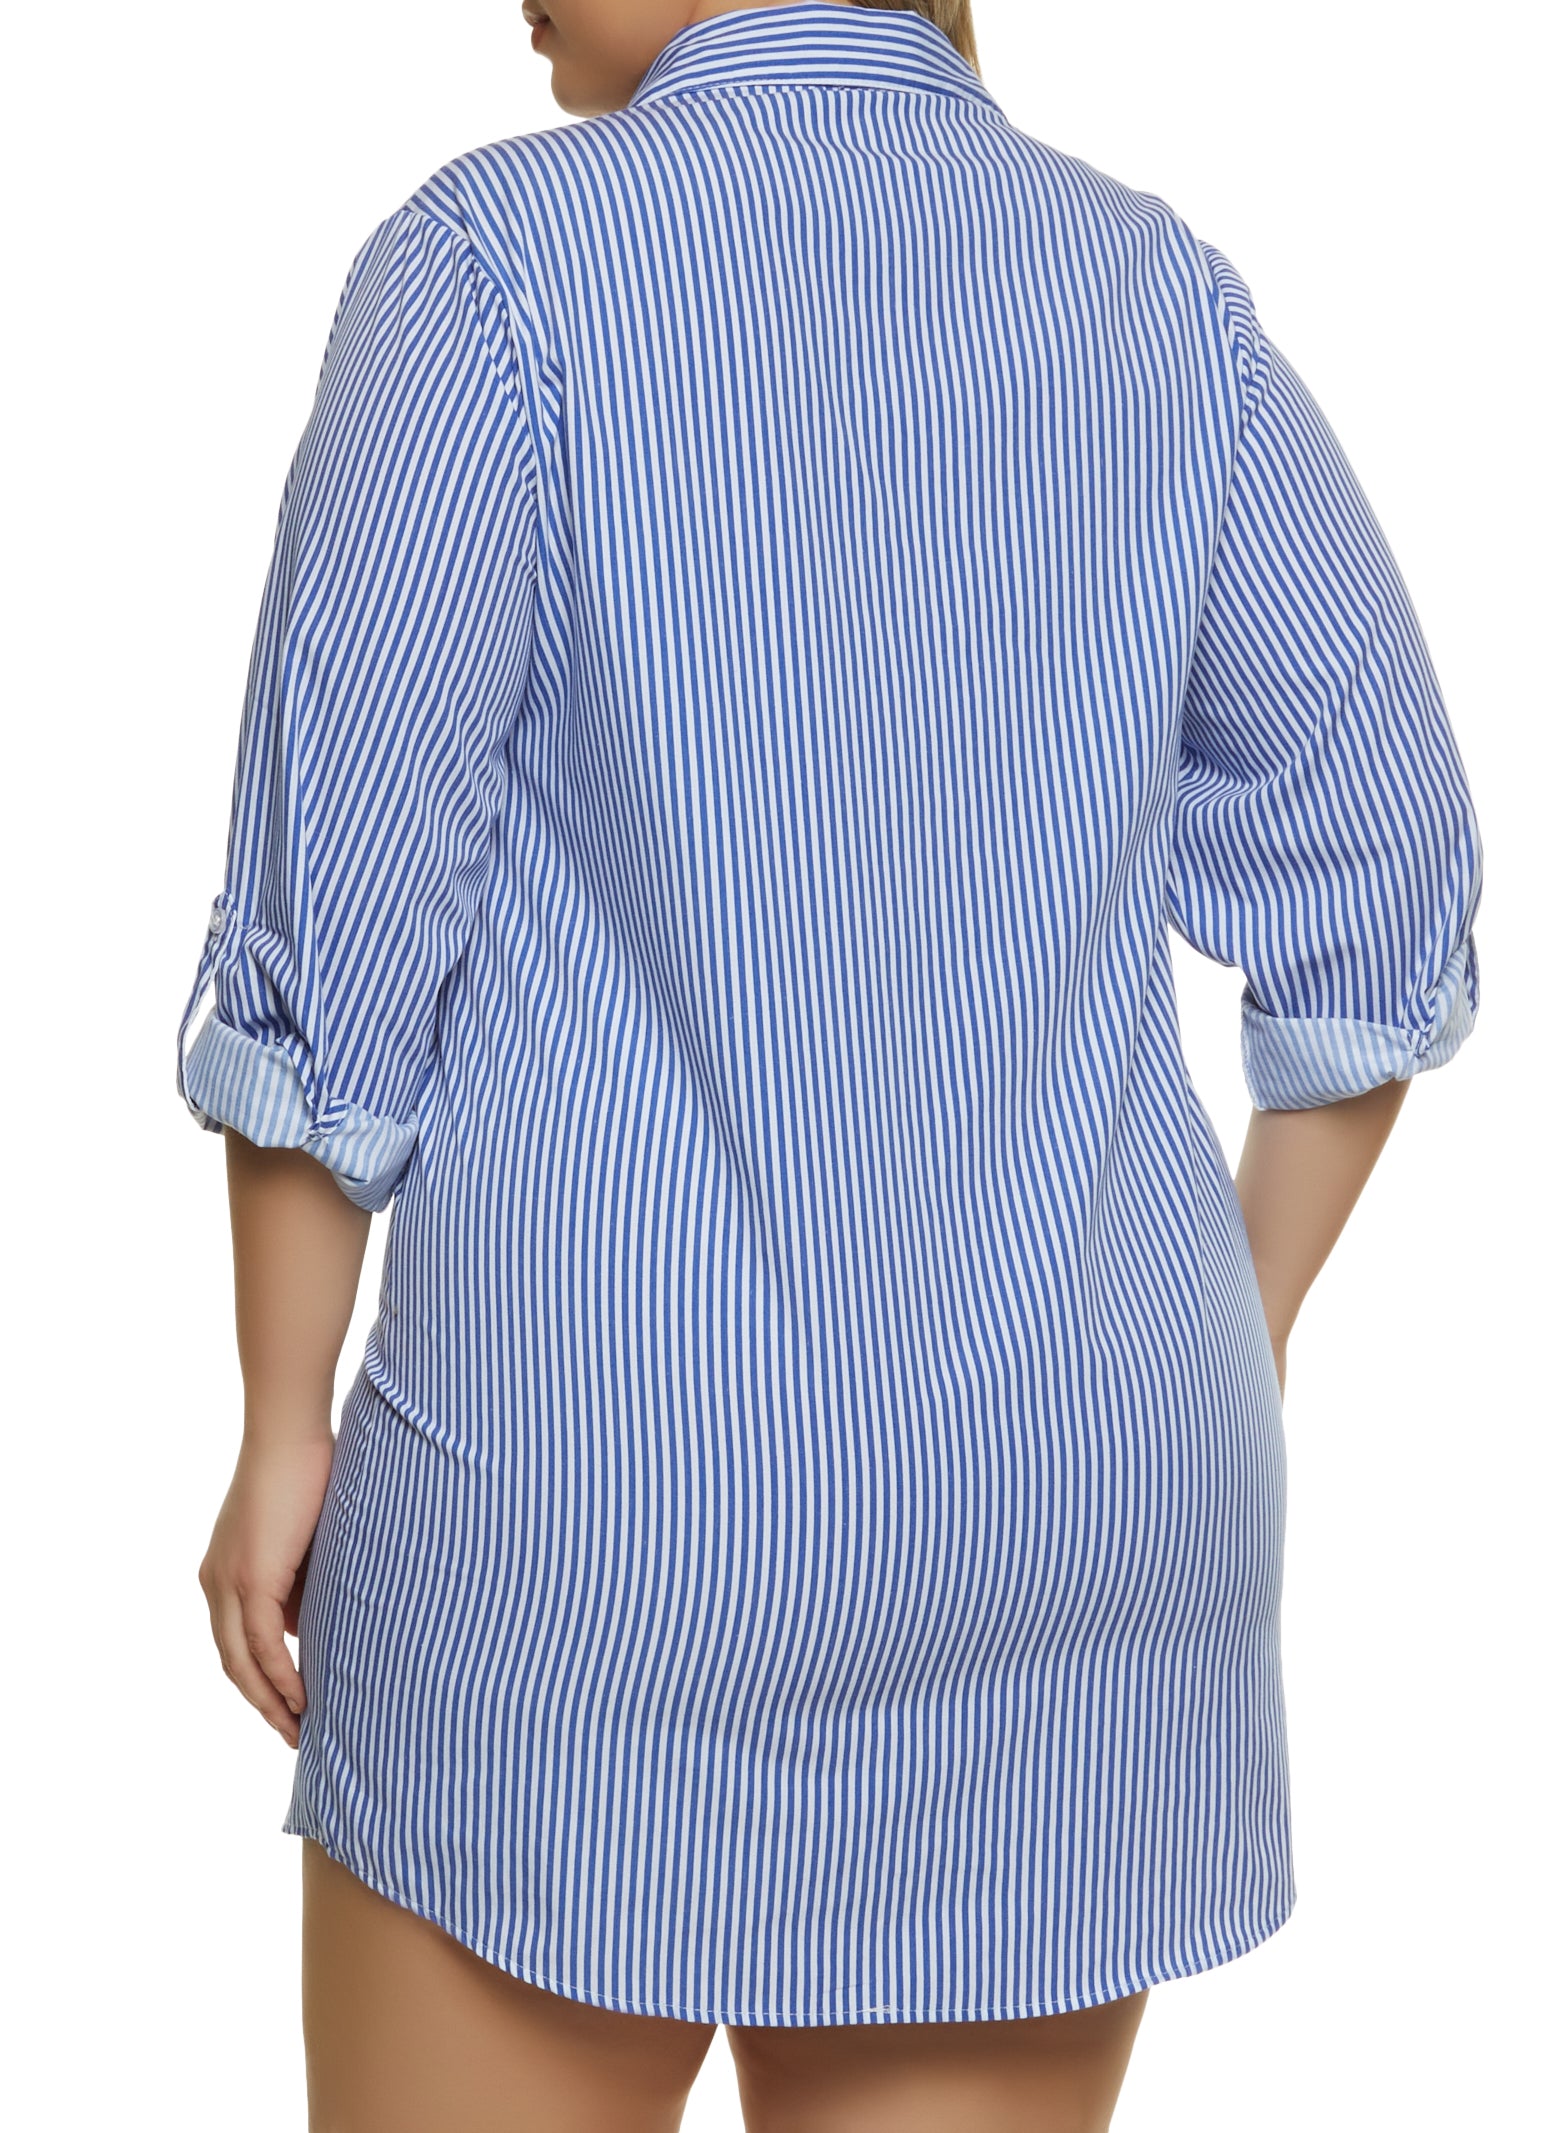 Plus Size Striped Pocket Shirt Dress